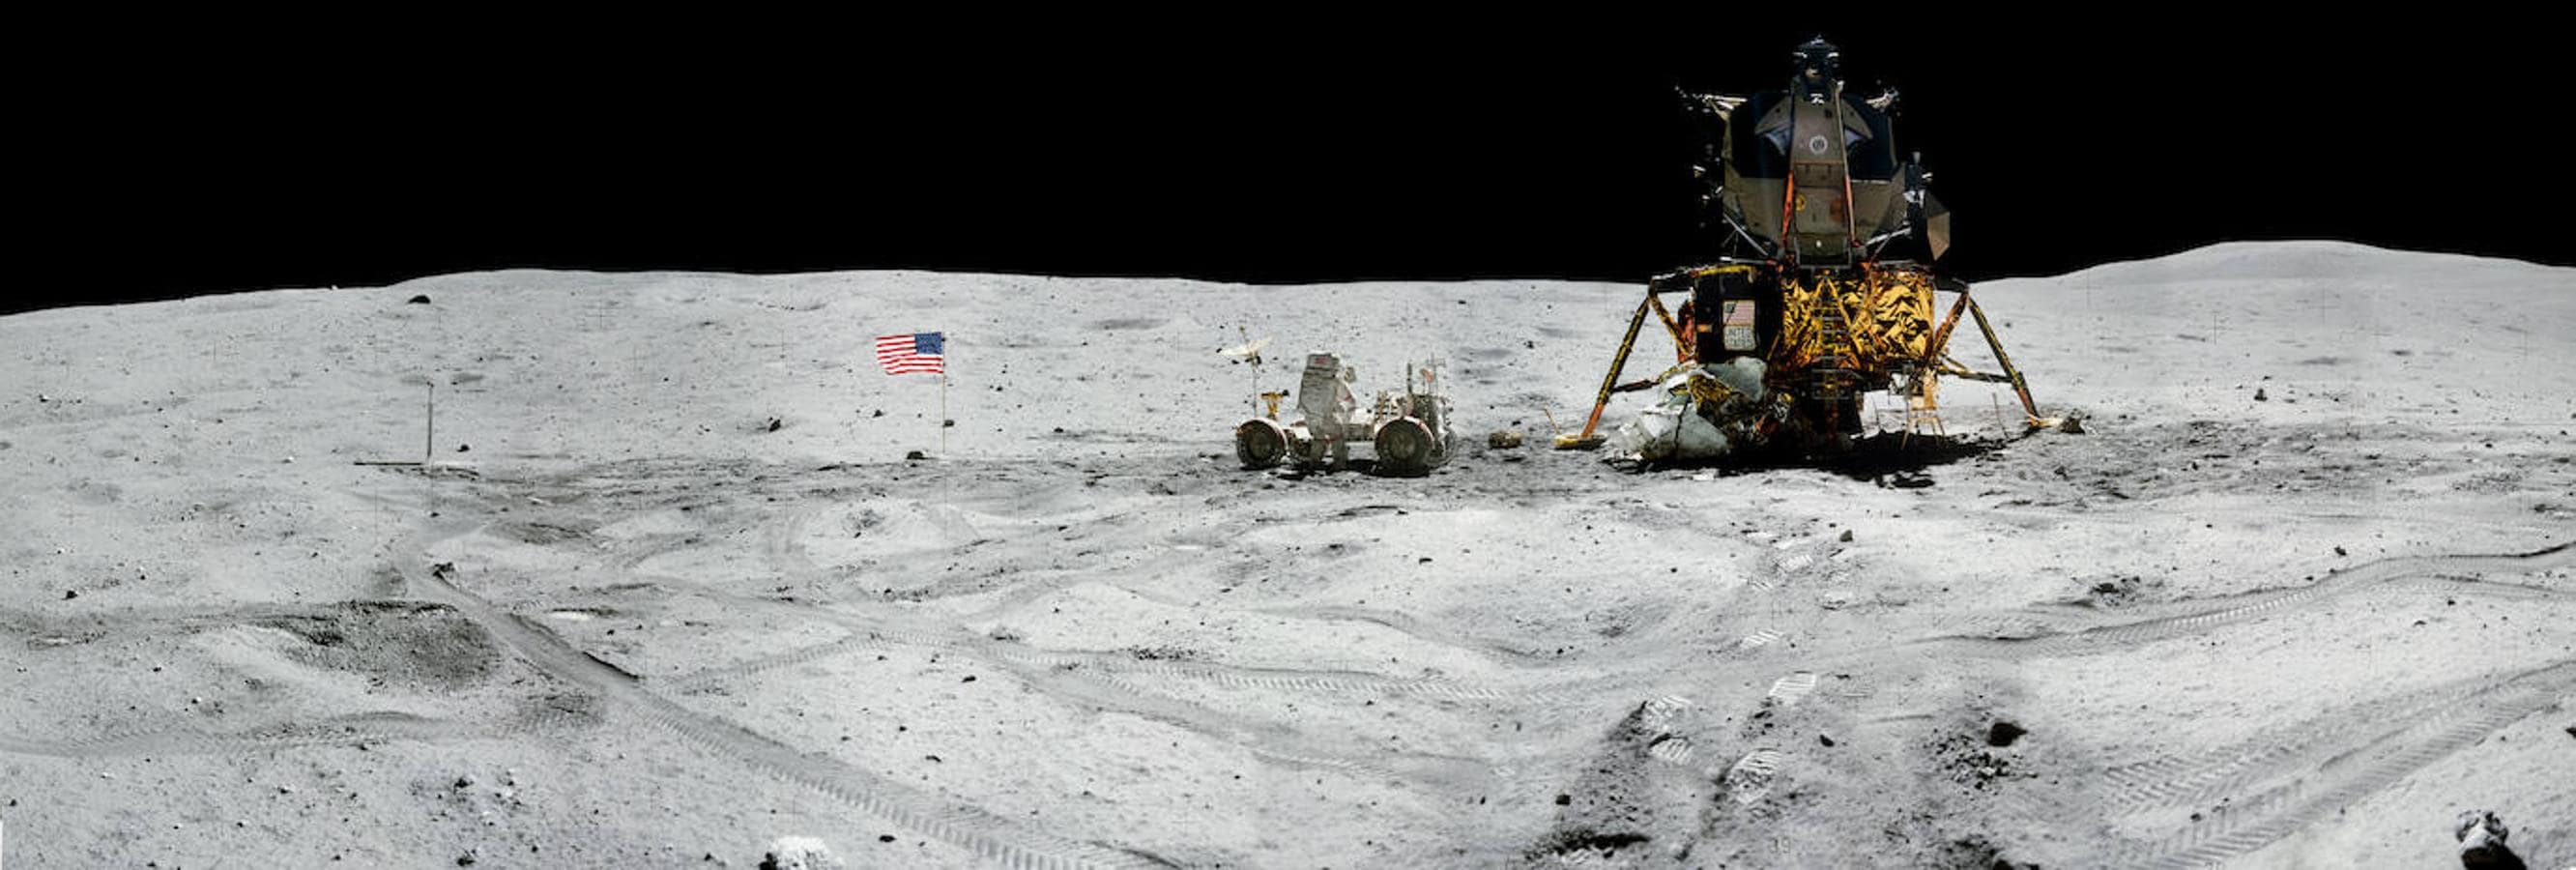 Impresionantes imágenes de la Luna tomadas durante todas las expediciones del Apolo